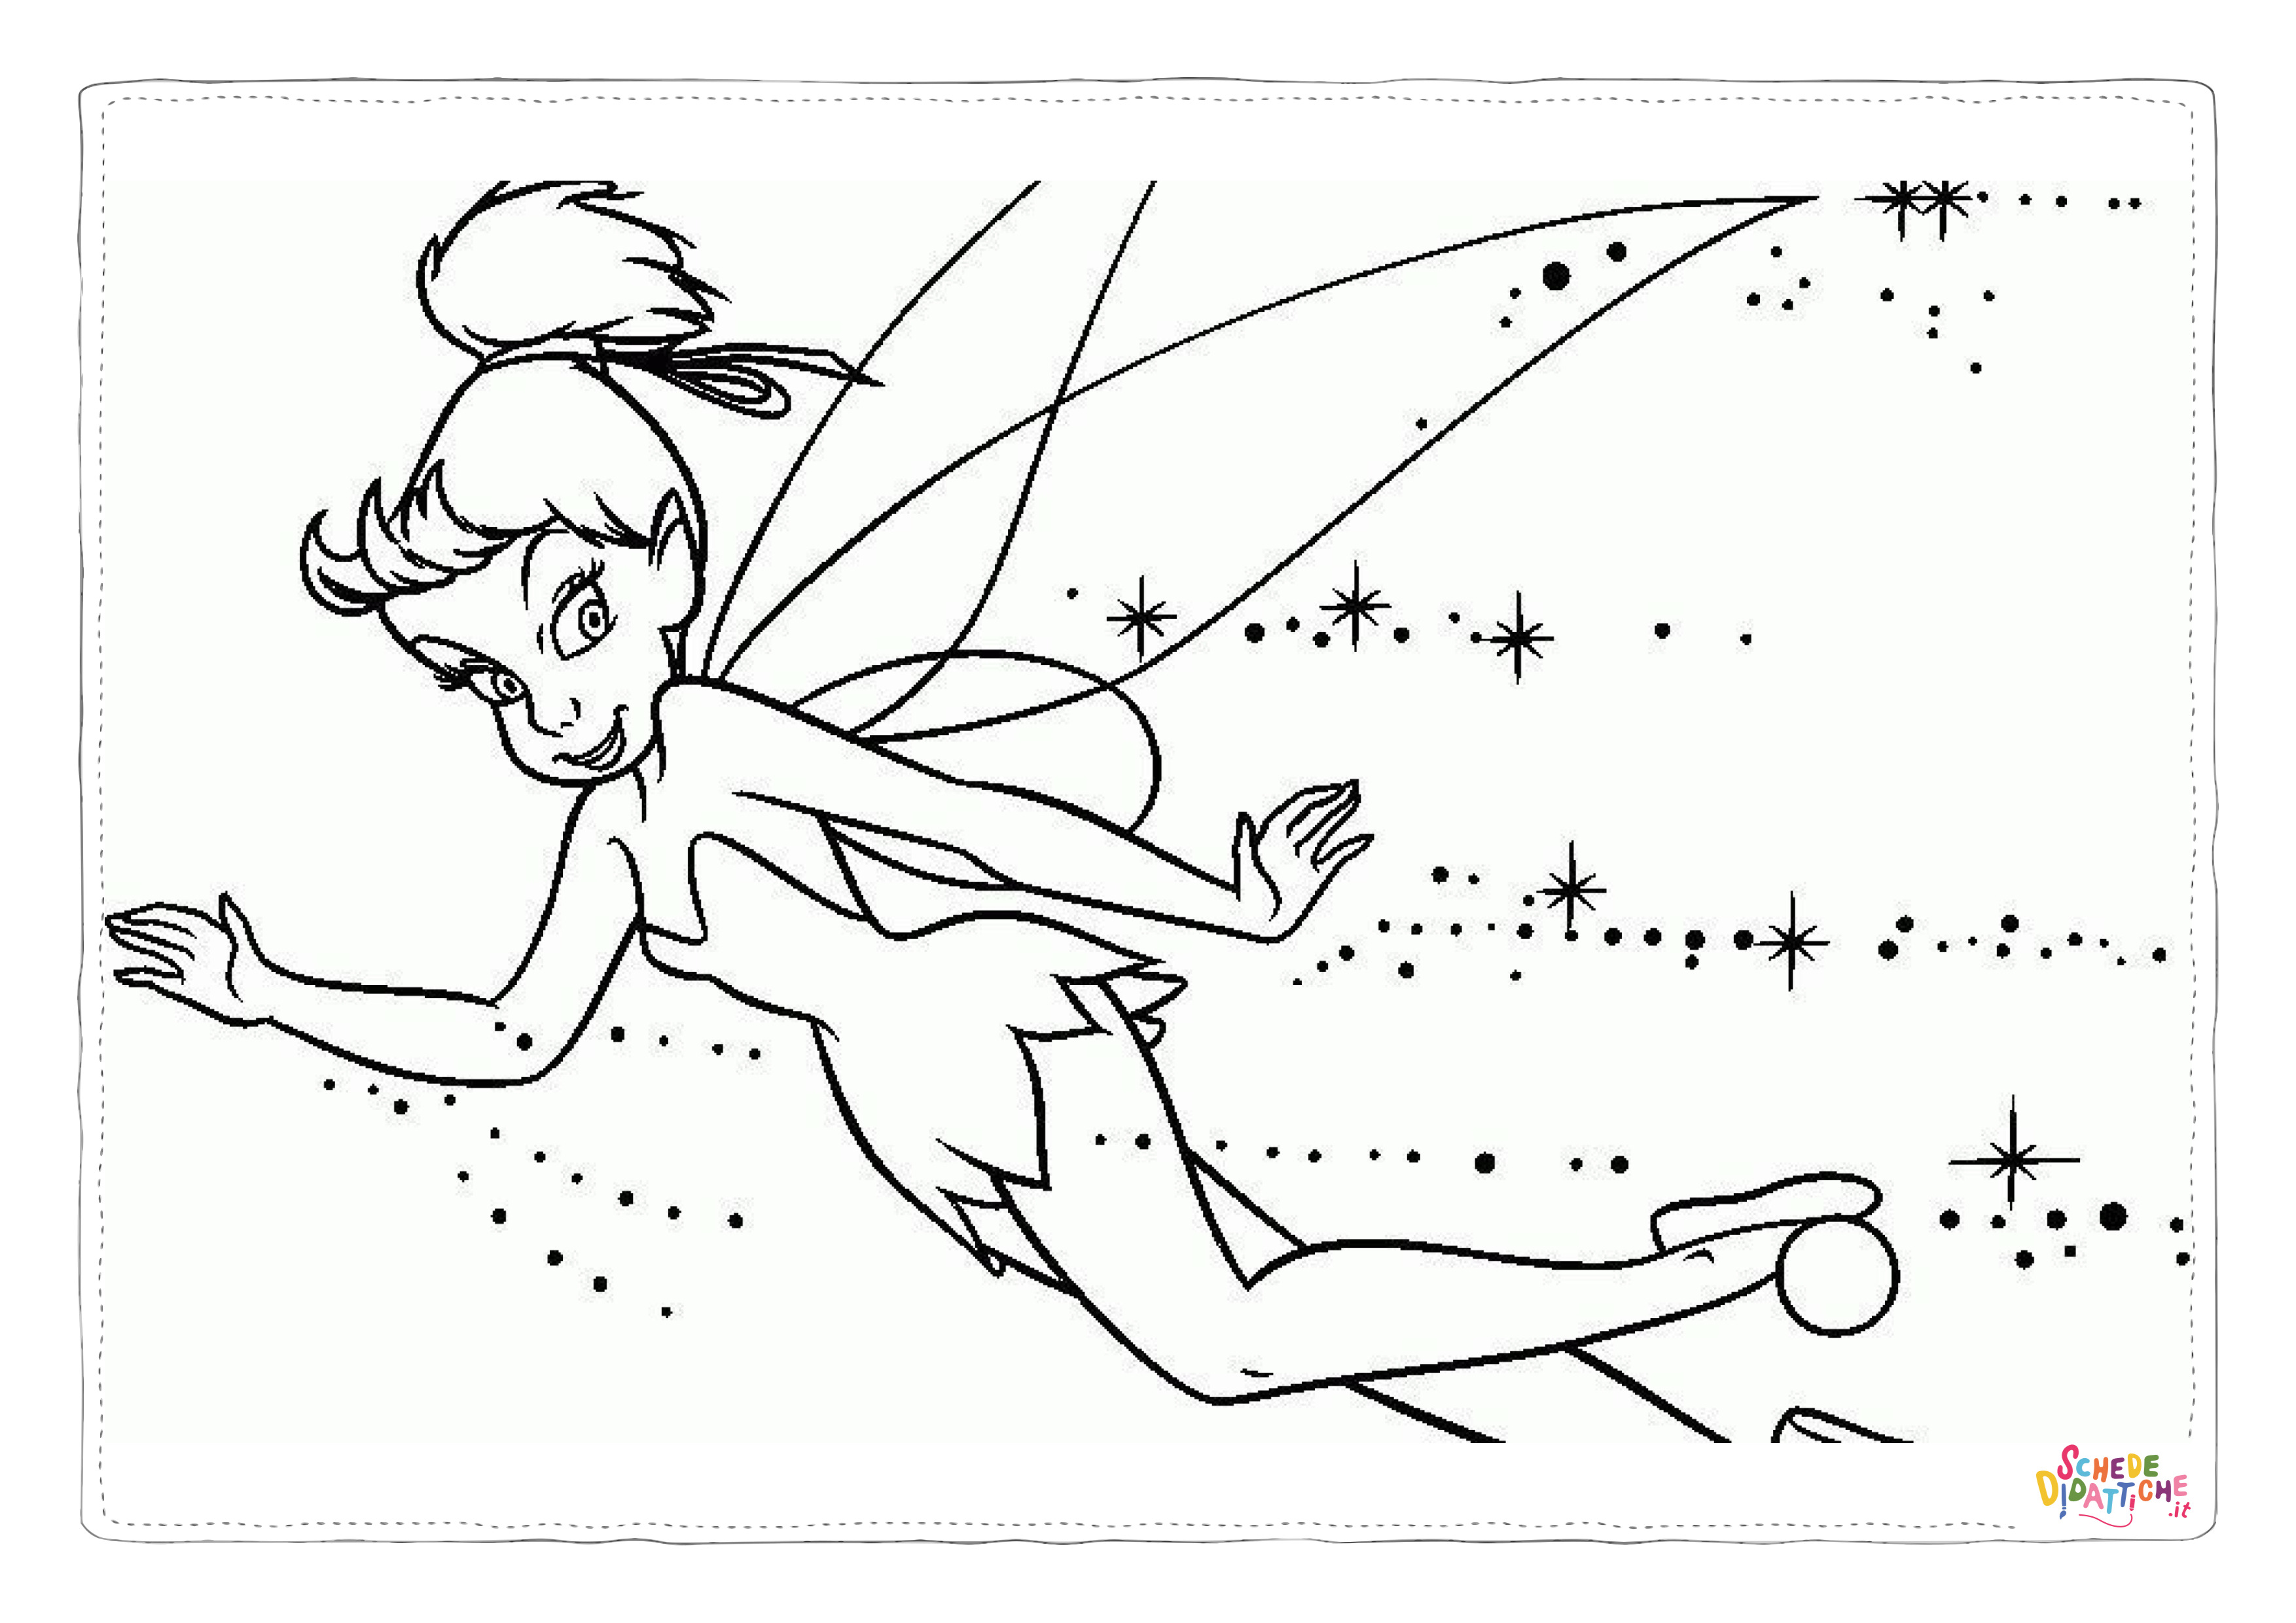 Disegno di Peter Pan da stampare e colorare 110